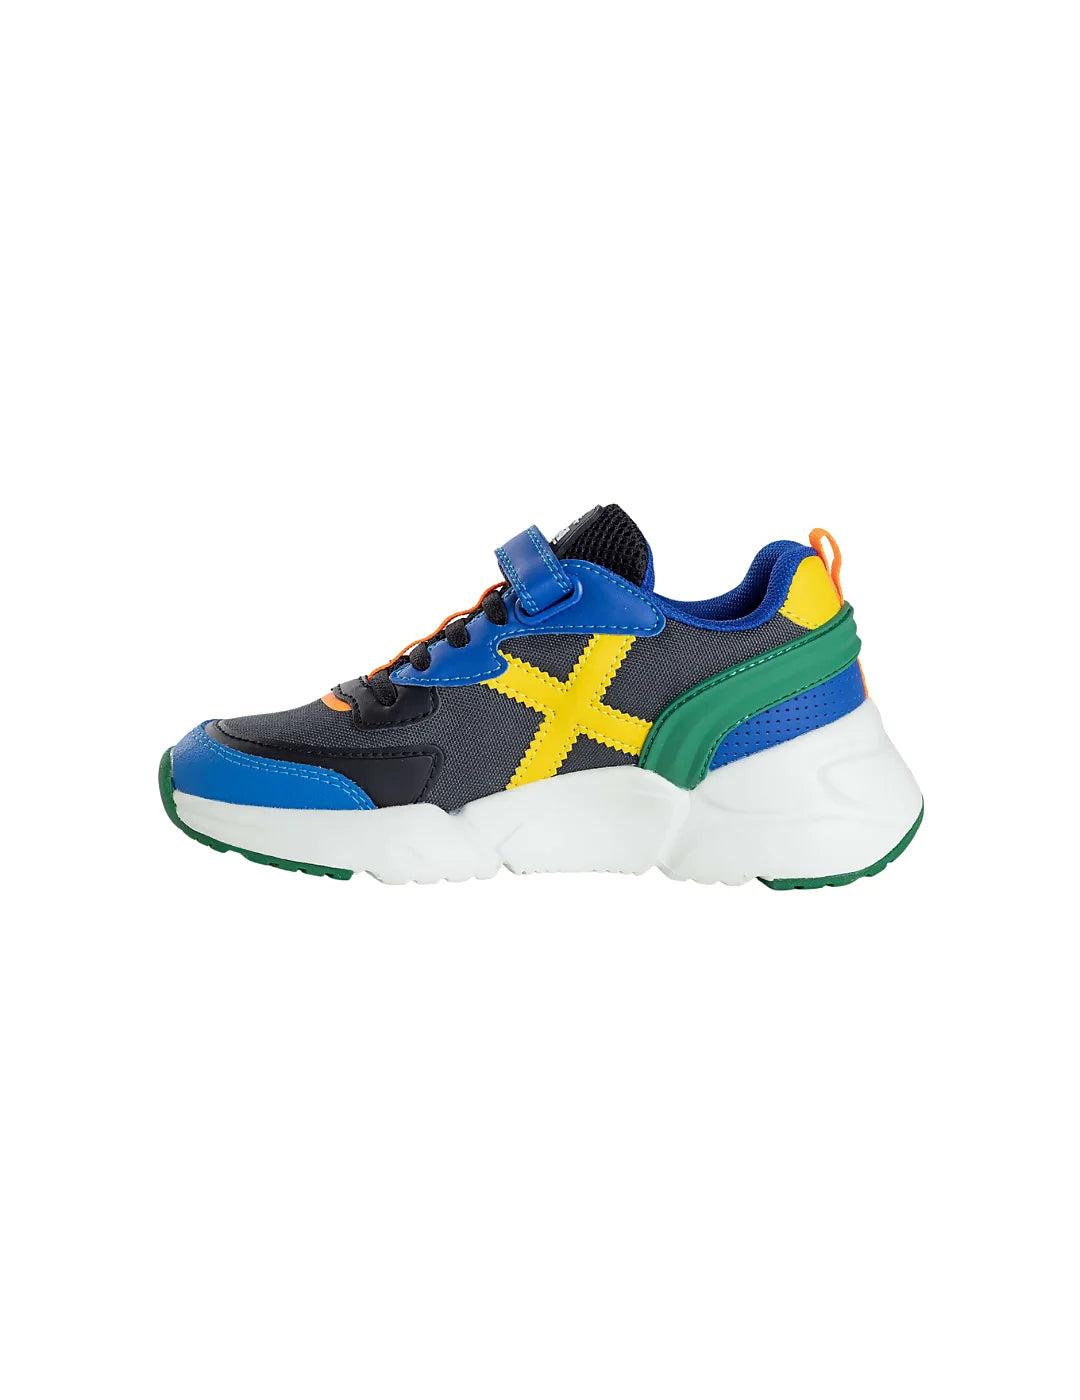 Zapatillas deportivas para niños, marca Munich Mini Track Vco 94, en color  marino. Talla 28 Color MARINO